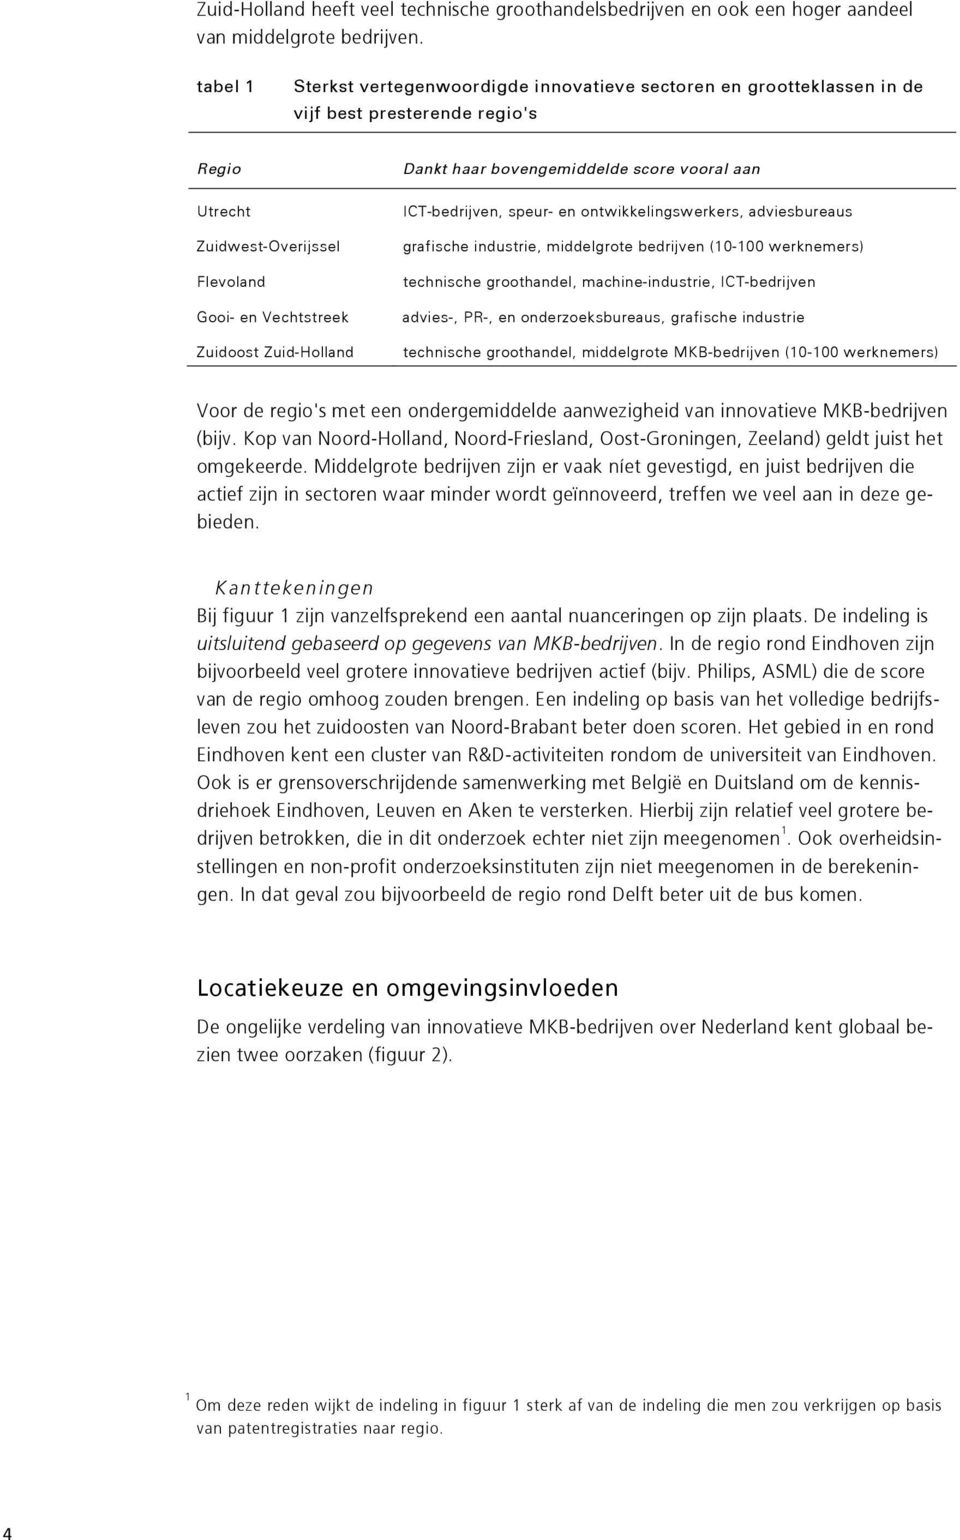 ontwikkelingswerkers, adviesbureaus Zuidwest-Overijssel Flevoland Gooi- en Vechtstreek Zuidoost Zuid-Holland grafische industrie, middelgrote bedrijven (0-00 werknemers) technische groothandel,